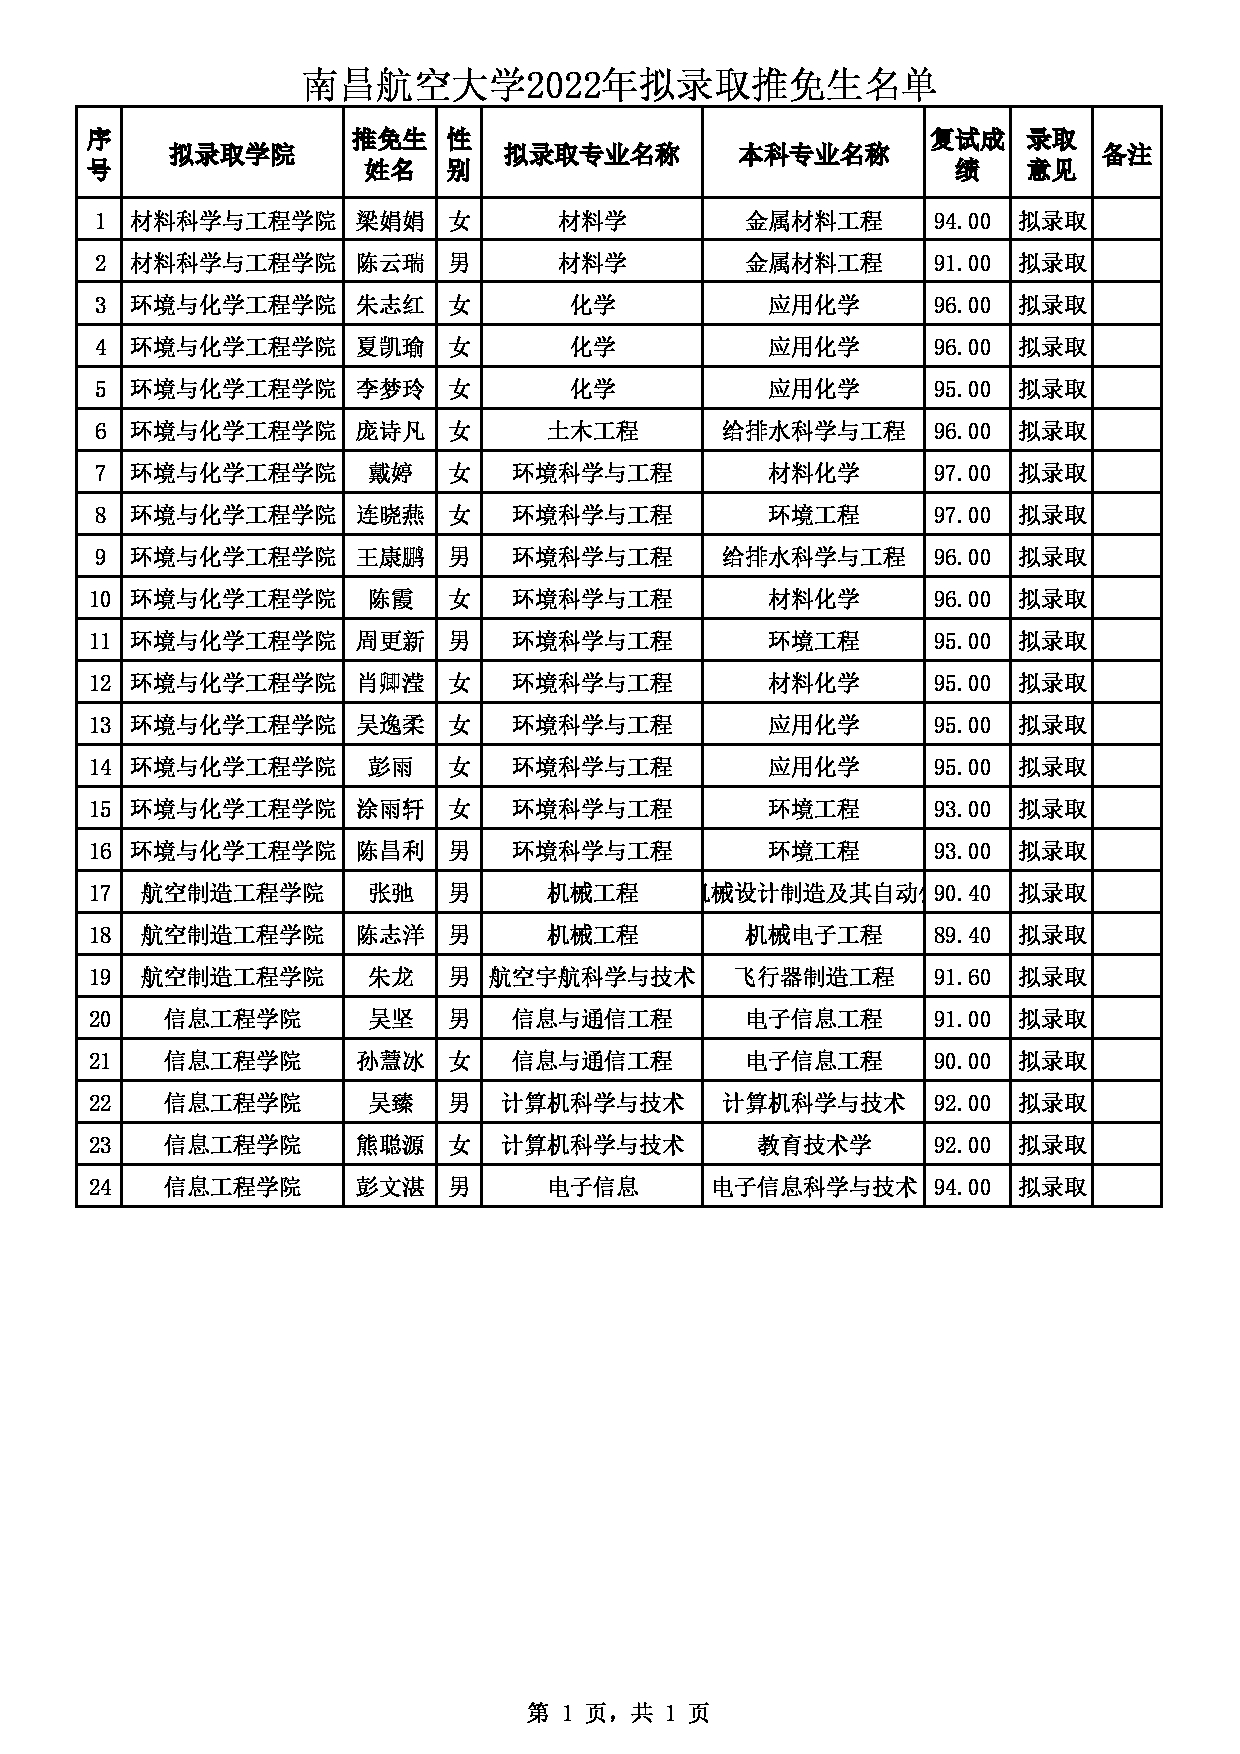 2022考研拟录取名单：南昌航空大学2022年拟录取推免生名单的公示第1页